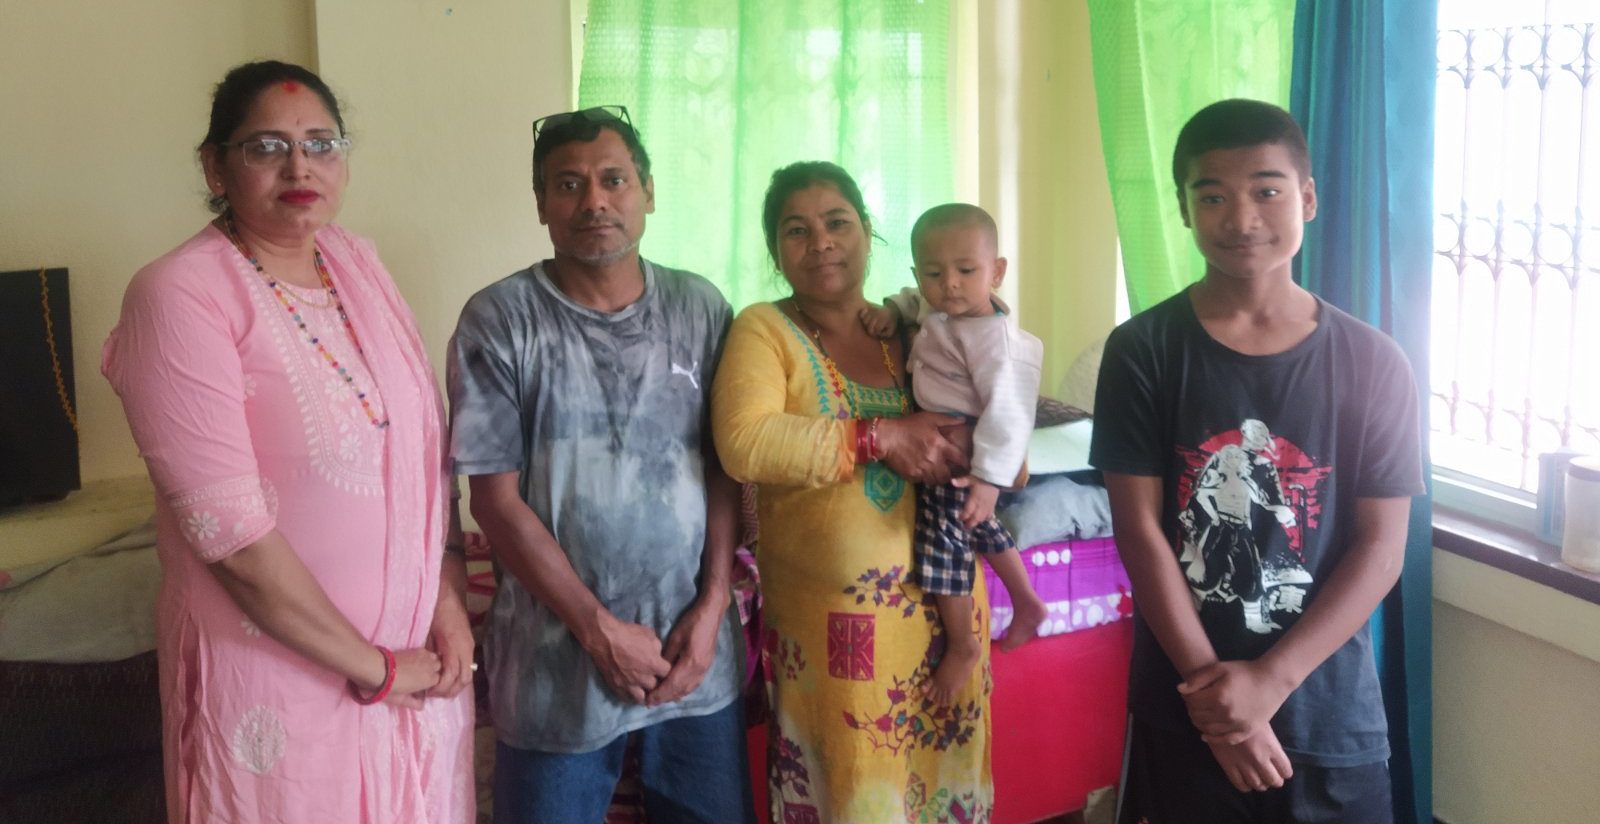 Sadim mit der Familie seiner Tante und der Sozialarbeiterin (links) des Projekts Voice of Children (Quelle: Kindernothilfepartner)